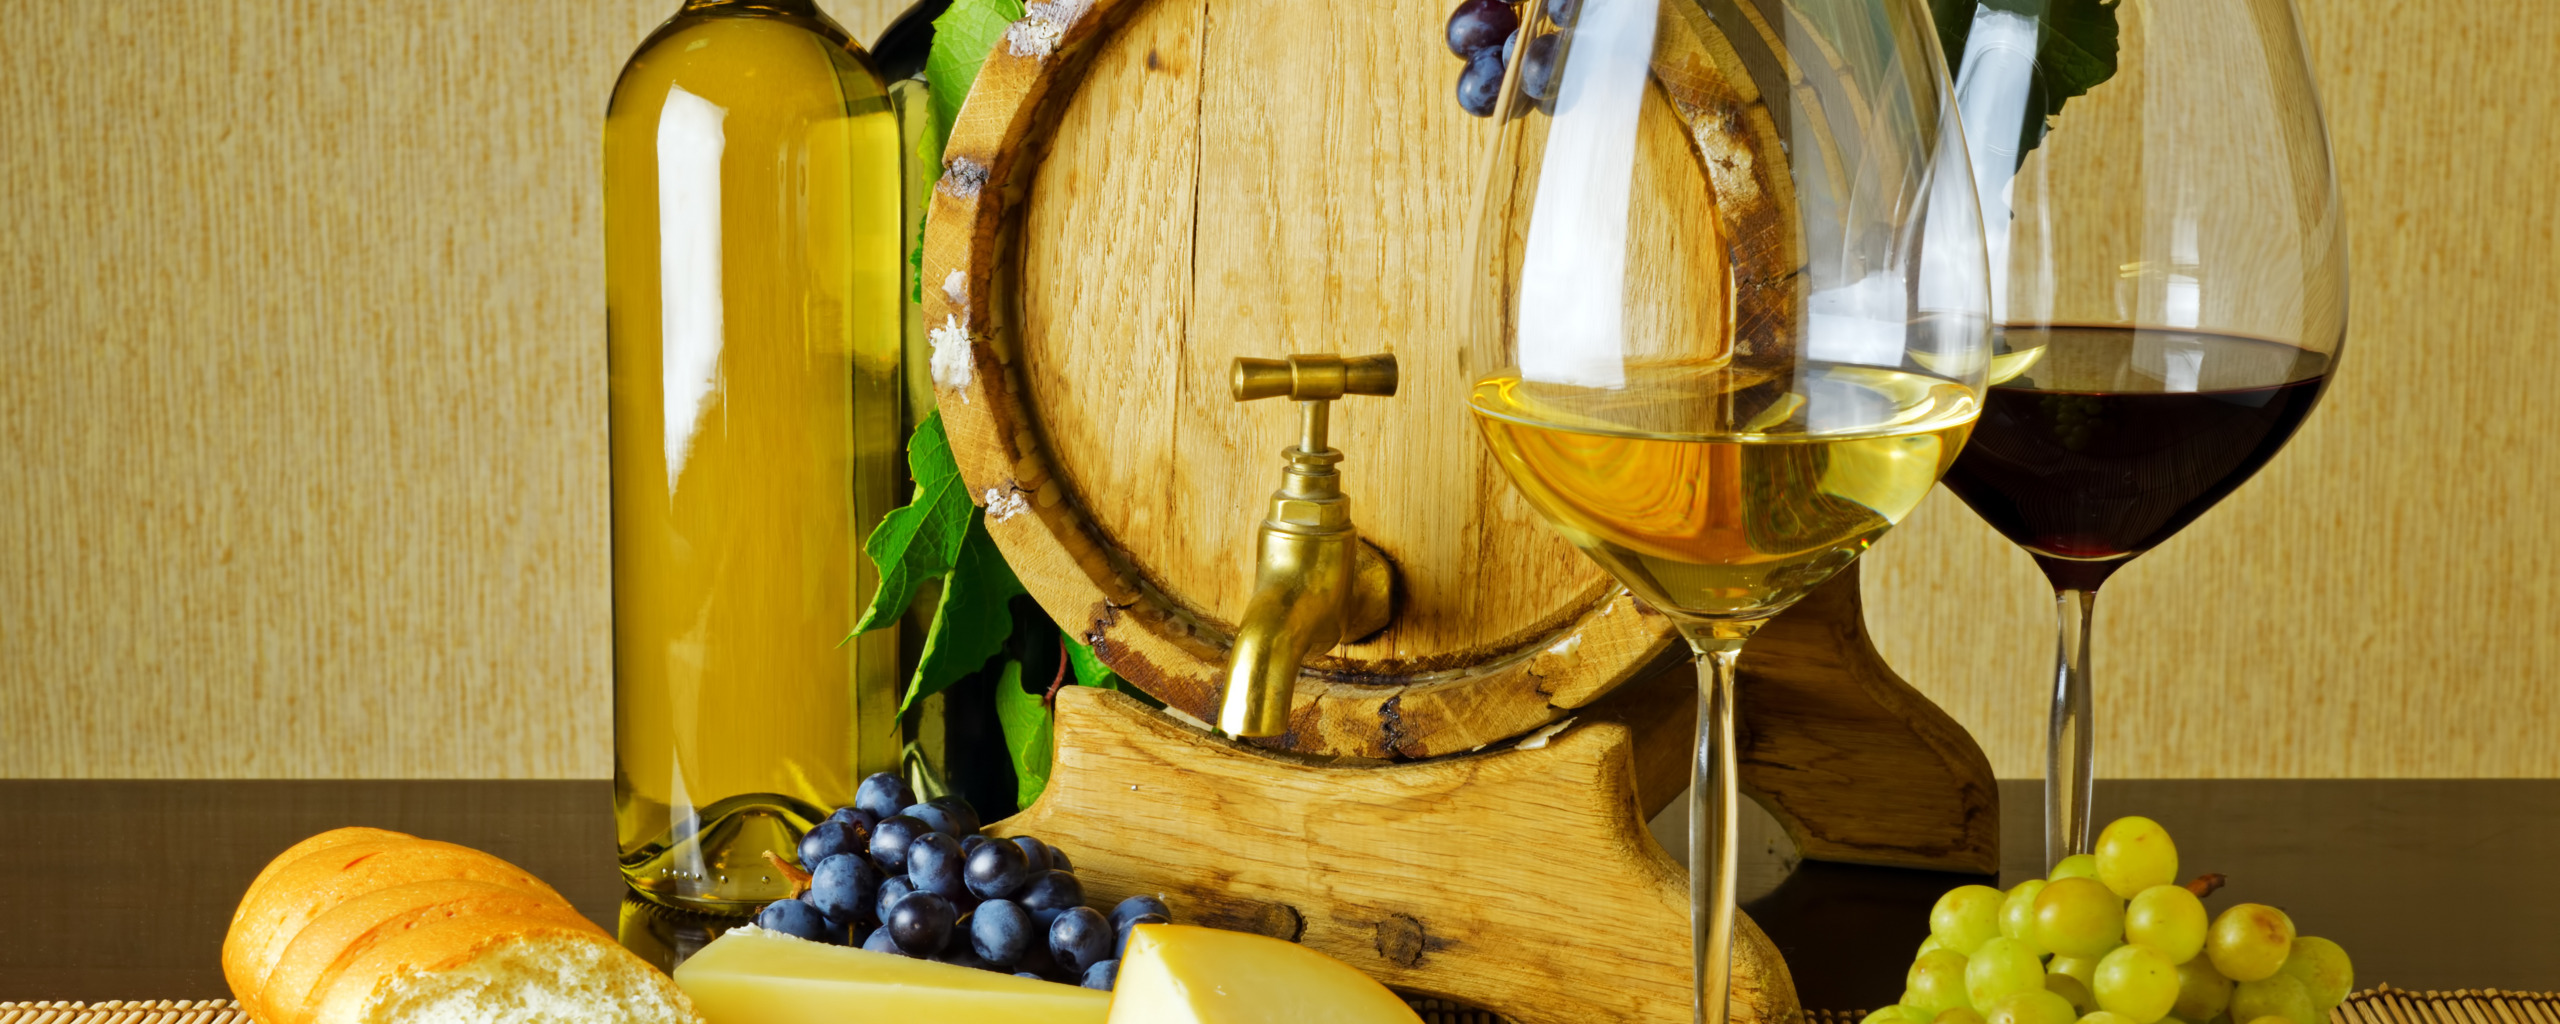 Vina ru. Натюрморт. Вино и сыр. Картины на кухню. Натюрморт вино и сыр.